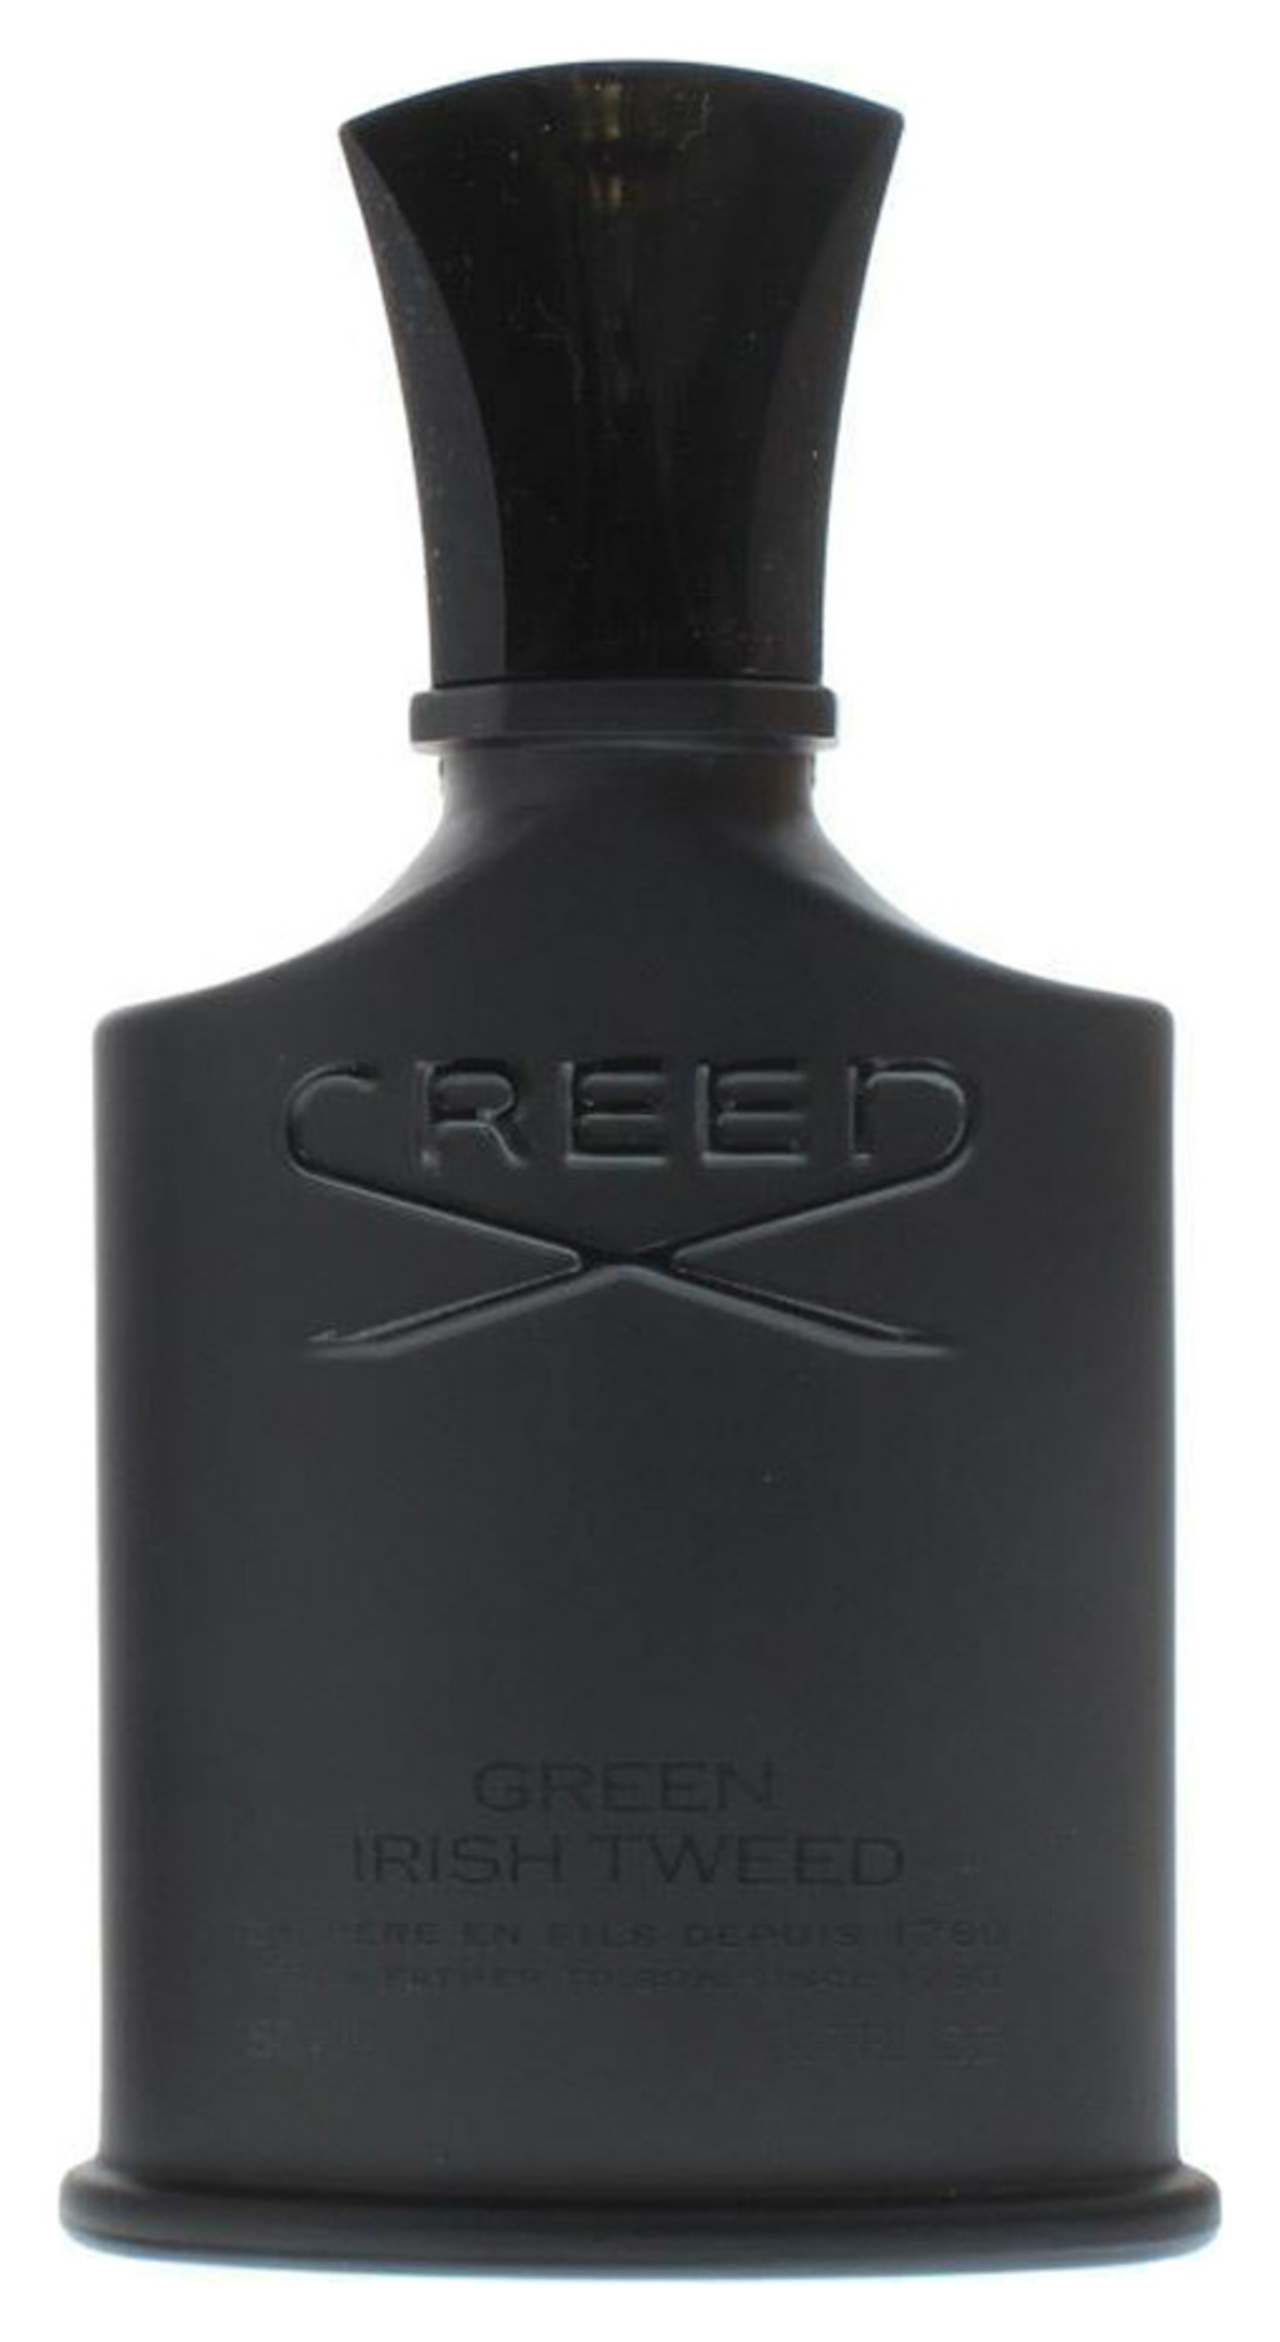 Creed green irish. Creed Green Irish Tweed 50мл. Creed Green Irish Tweed EDP 50 ml. Creed Green Irish Tweed парфюмерная вода 100 мл. Туалетная вода мужская Creed Green Irish Tweed.